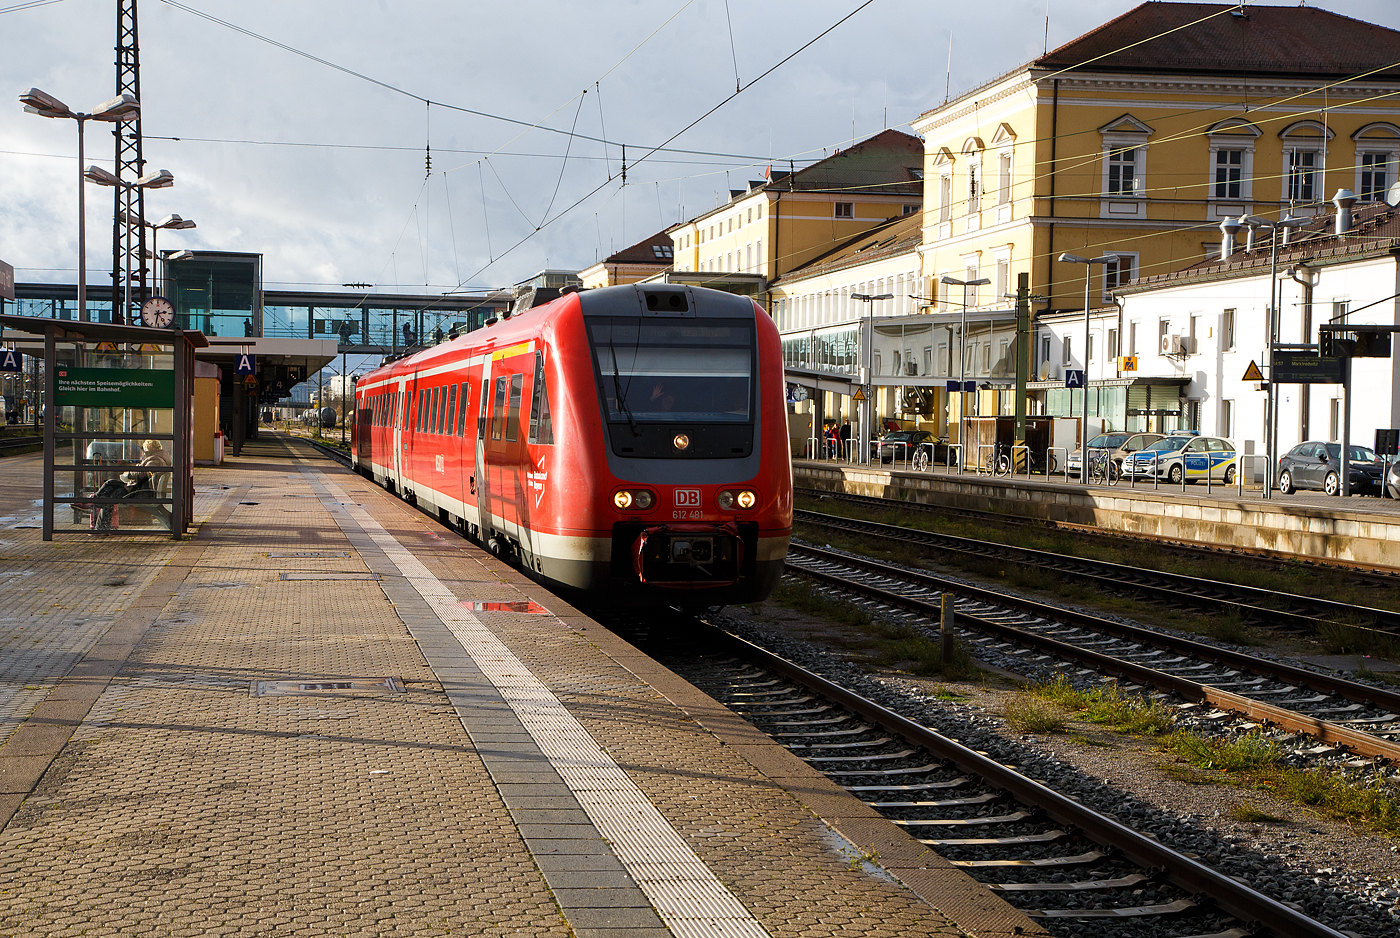 Der Dieseltriebwagen mit Neigetechnik 612 481 / 612 981, ein Bombardier  RegioSwinger  der DB Regio Bayern, verlässt am 24.11.2022, als RE 40 nach Nürnberg Hbf, den Hauptbahnhof Regensburg.

Nochmal einen lieben Gruß an den netten grüßenden Tf zurück
